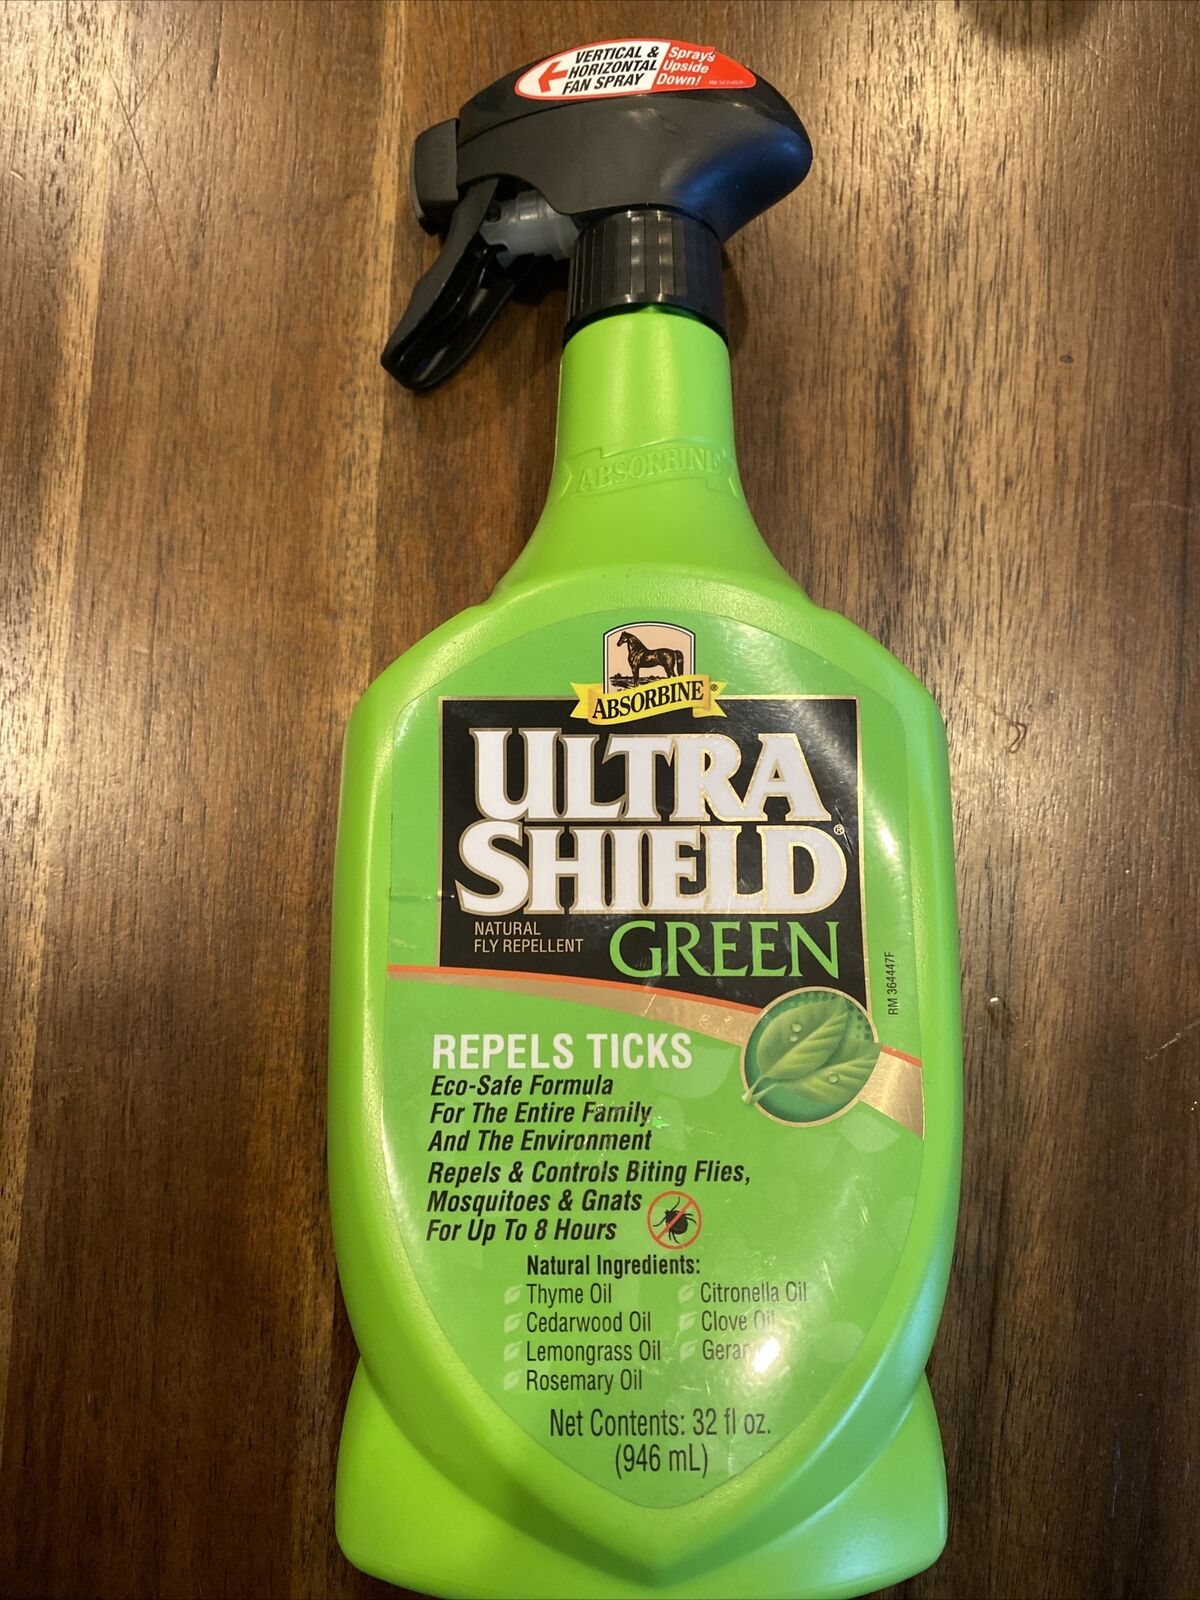 Absorbine Ultrashield Green Natural Fly Repellent Spray Repel Ticks